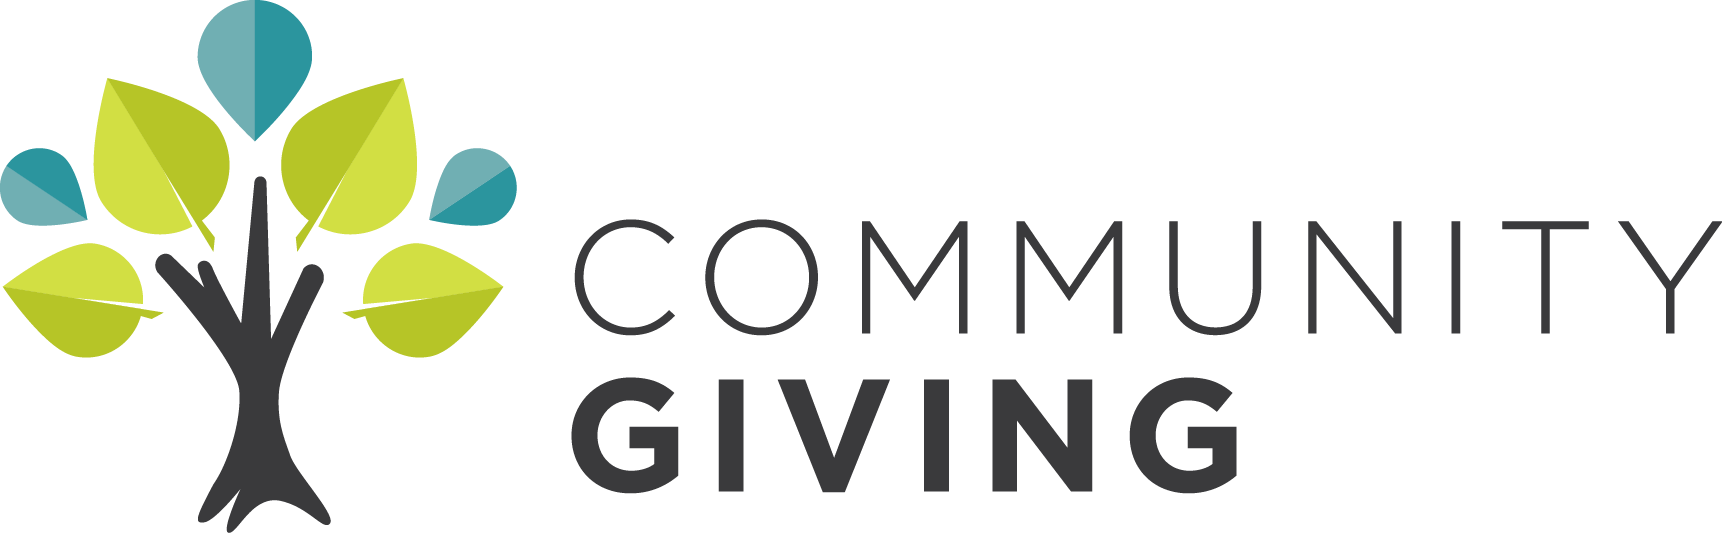 Logo de don communautaire